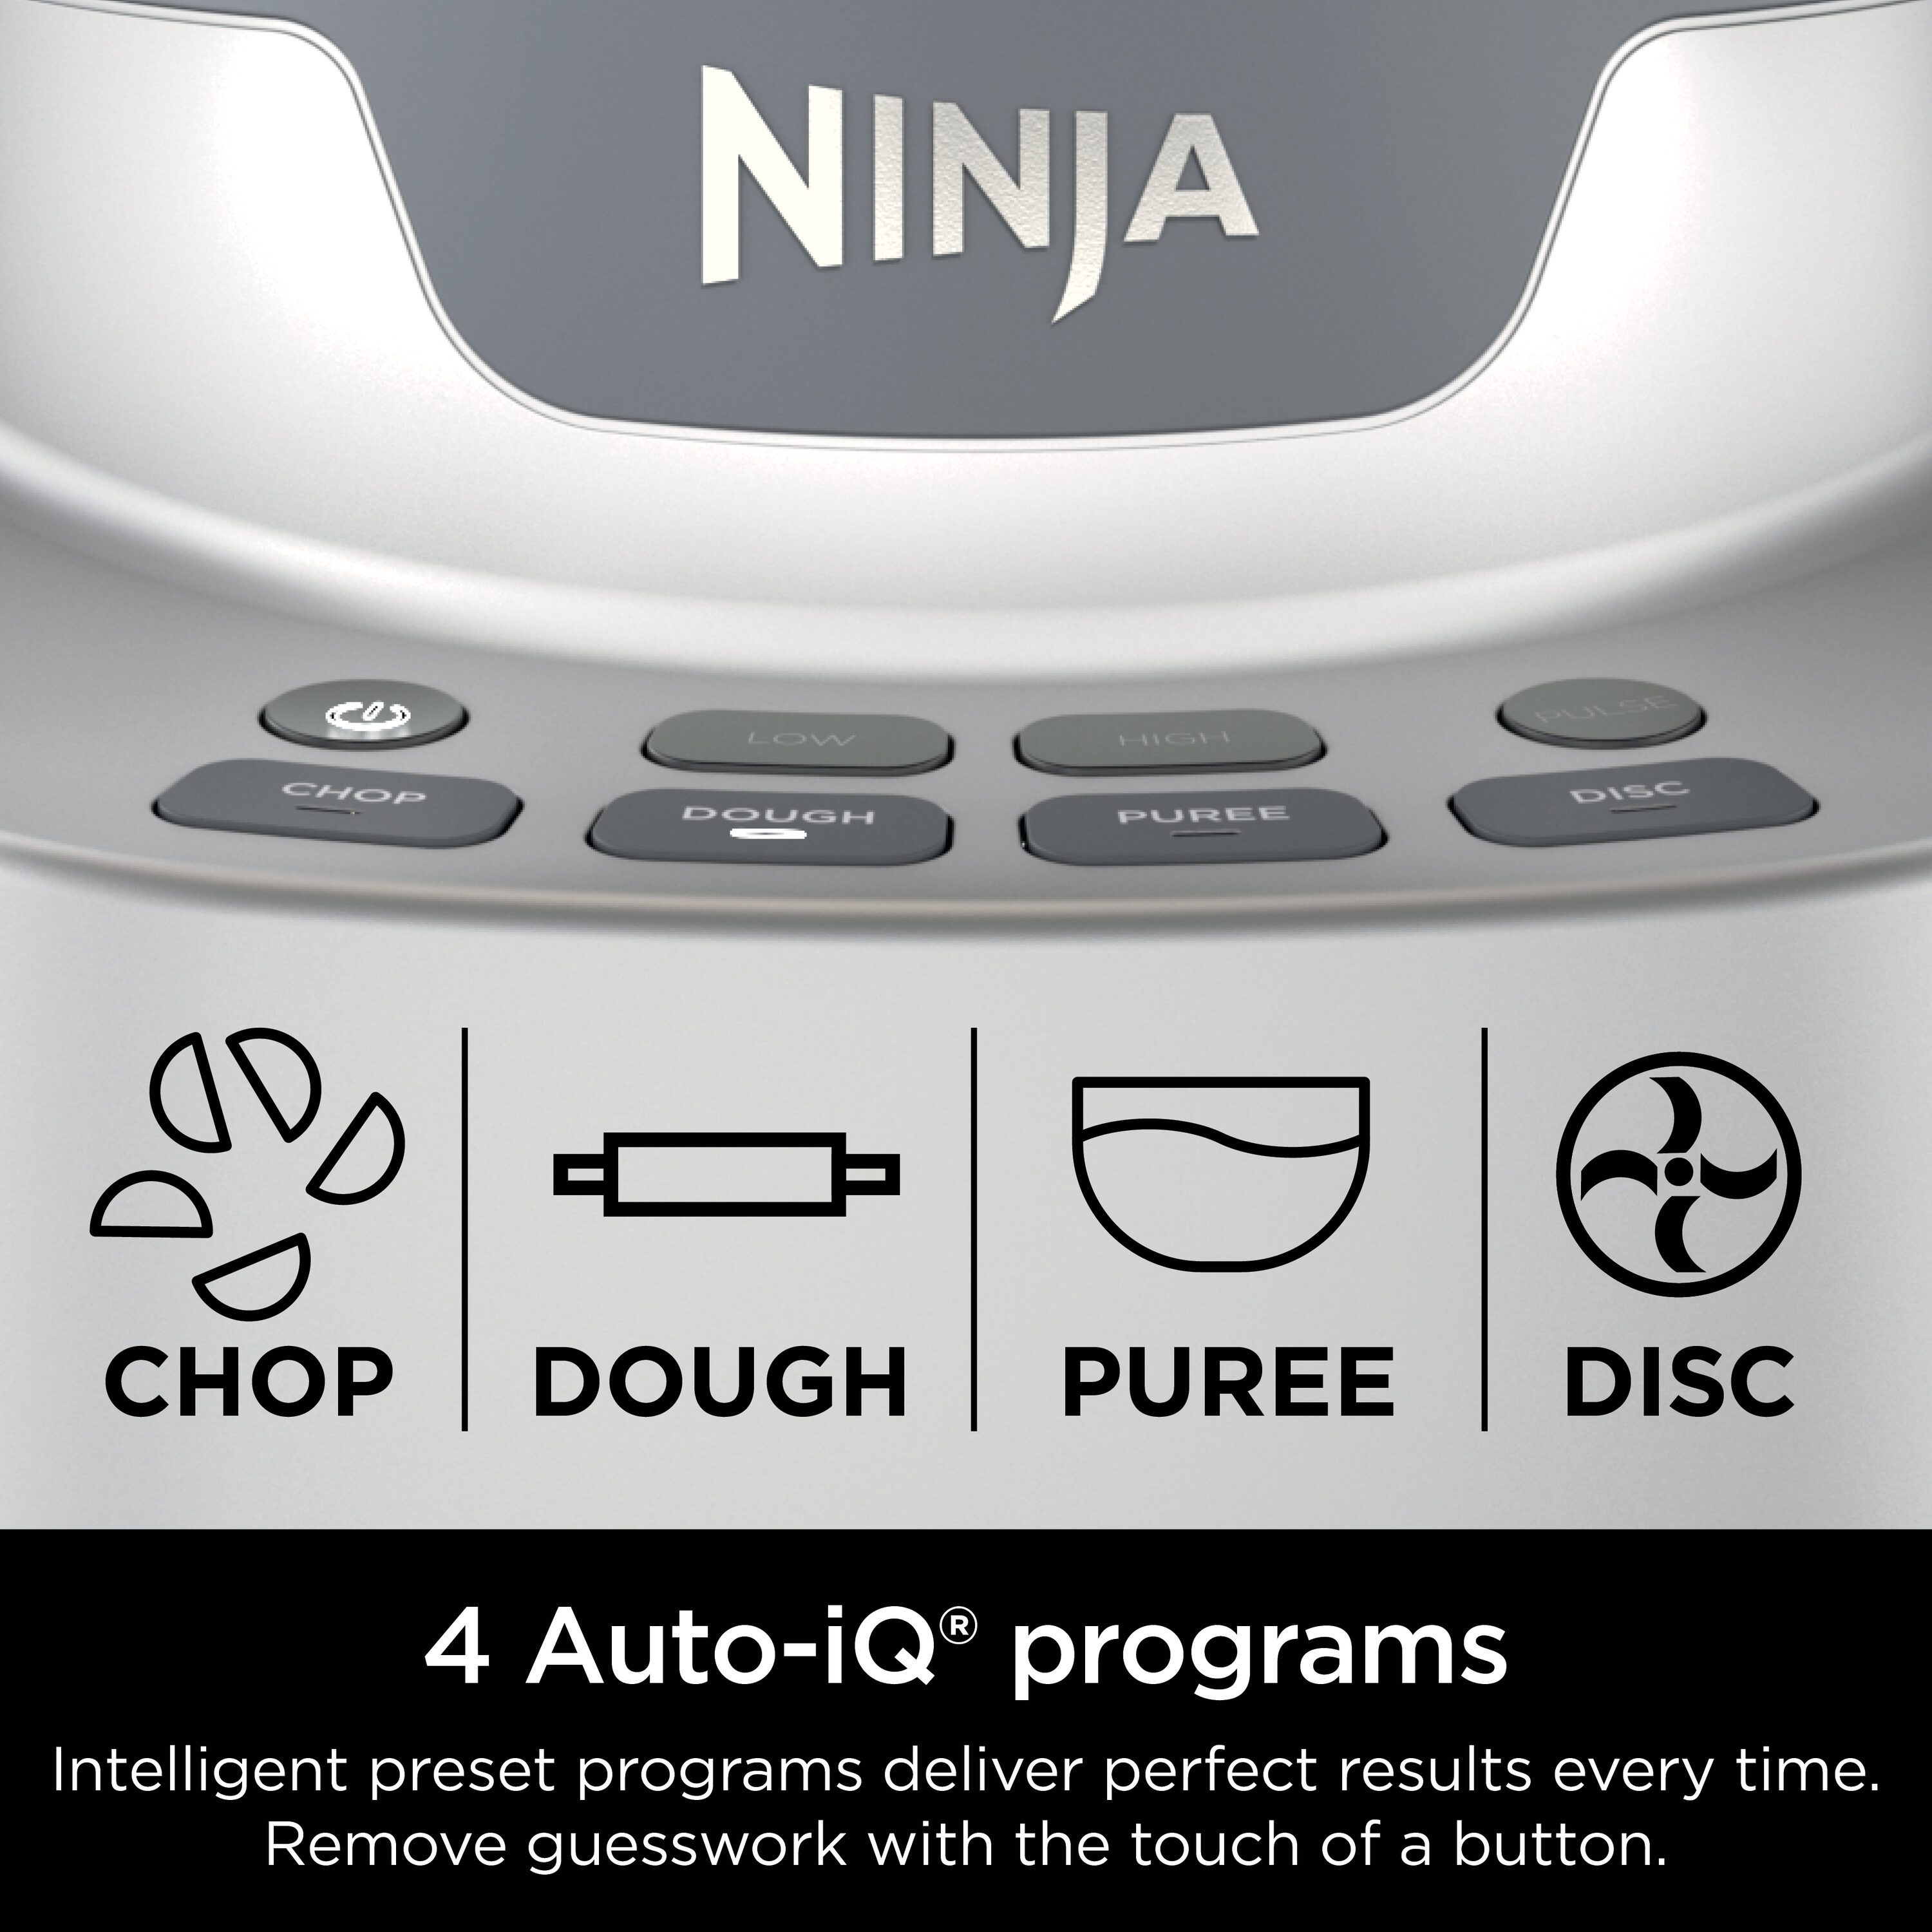 Ninja 9-Cup 850-Watt Professional Food Processor with Auto-IQ